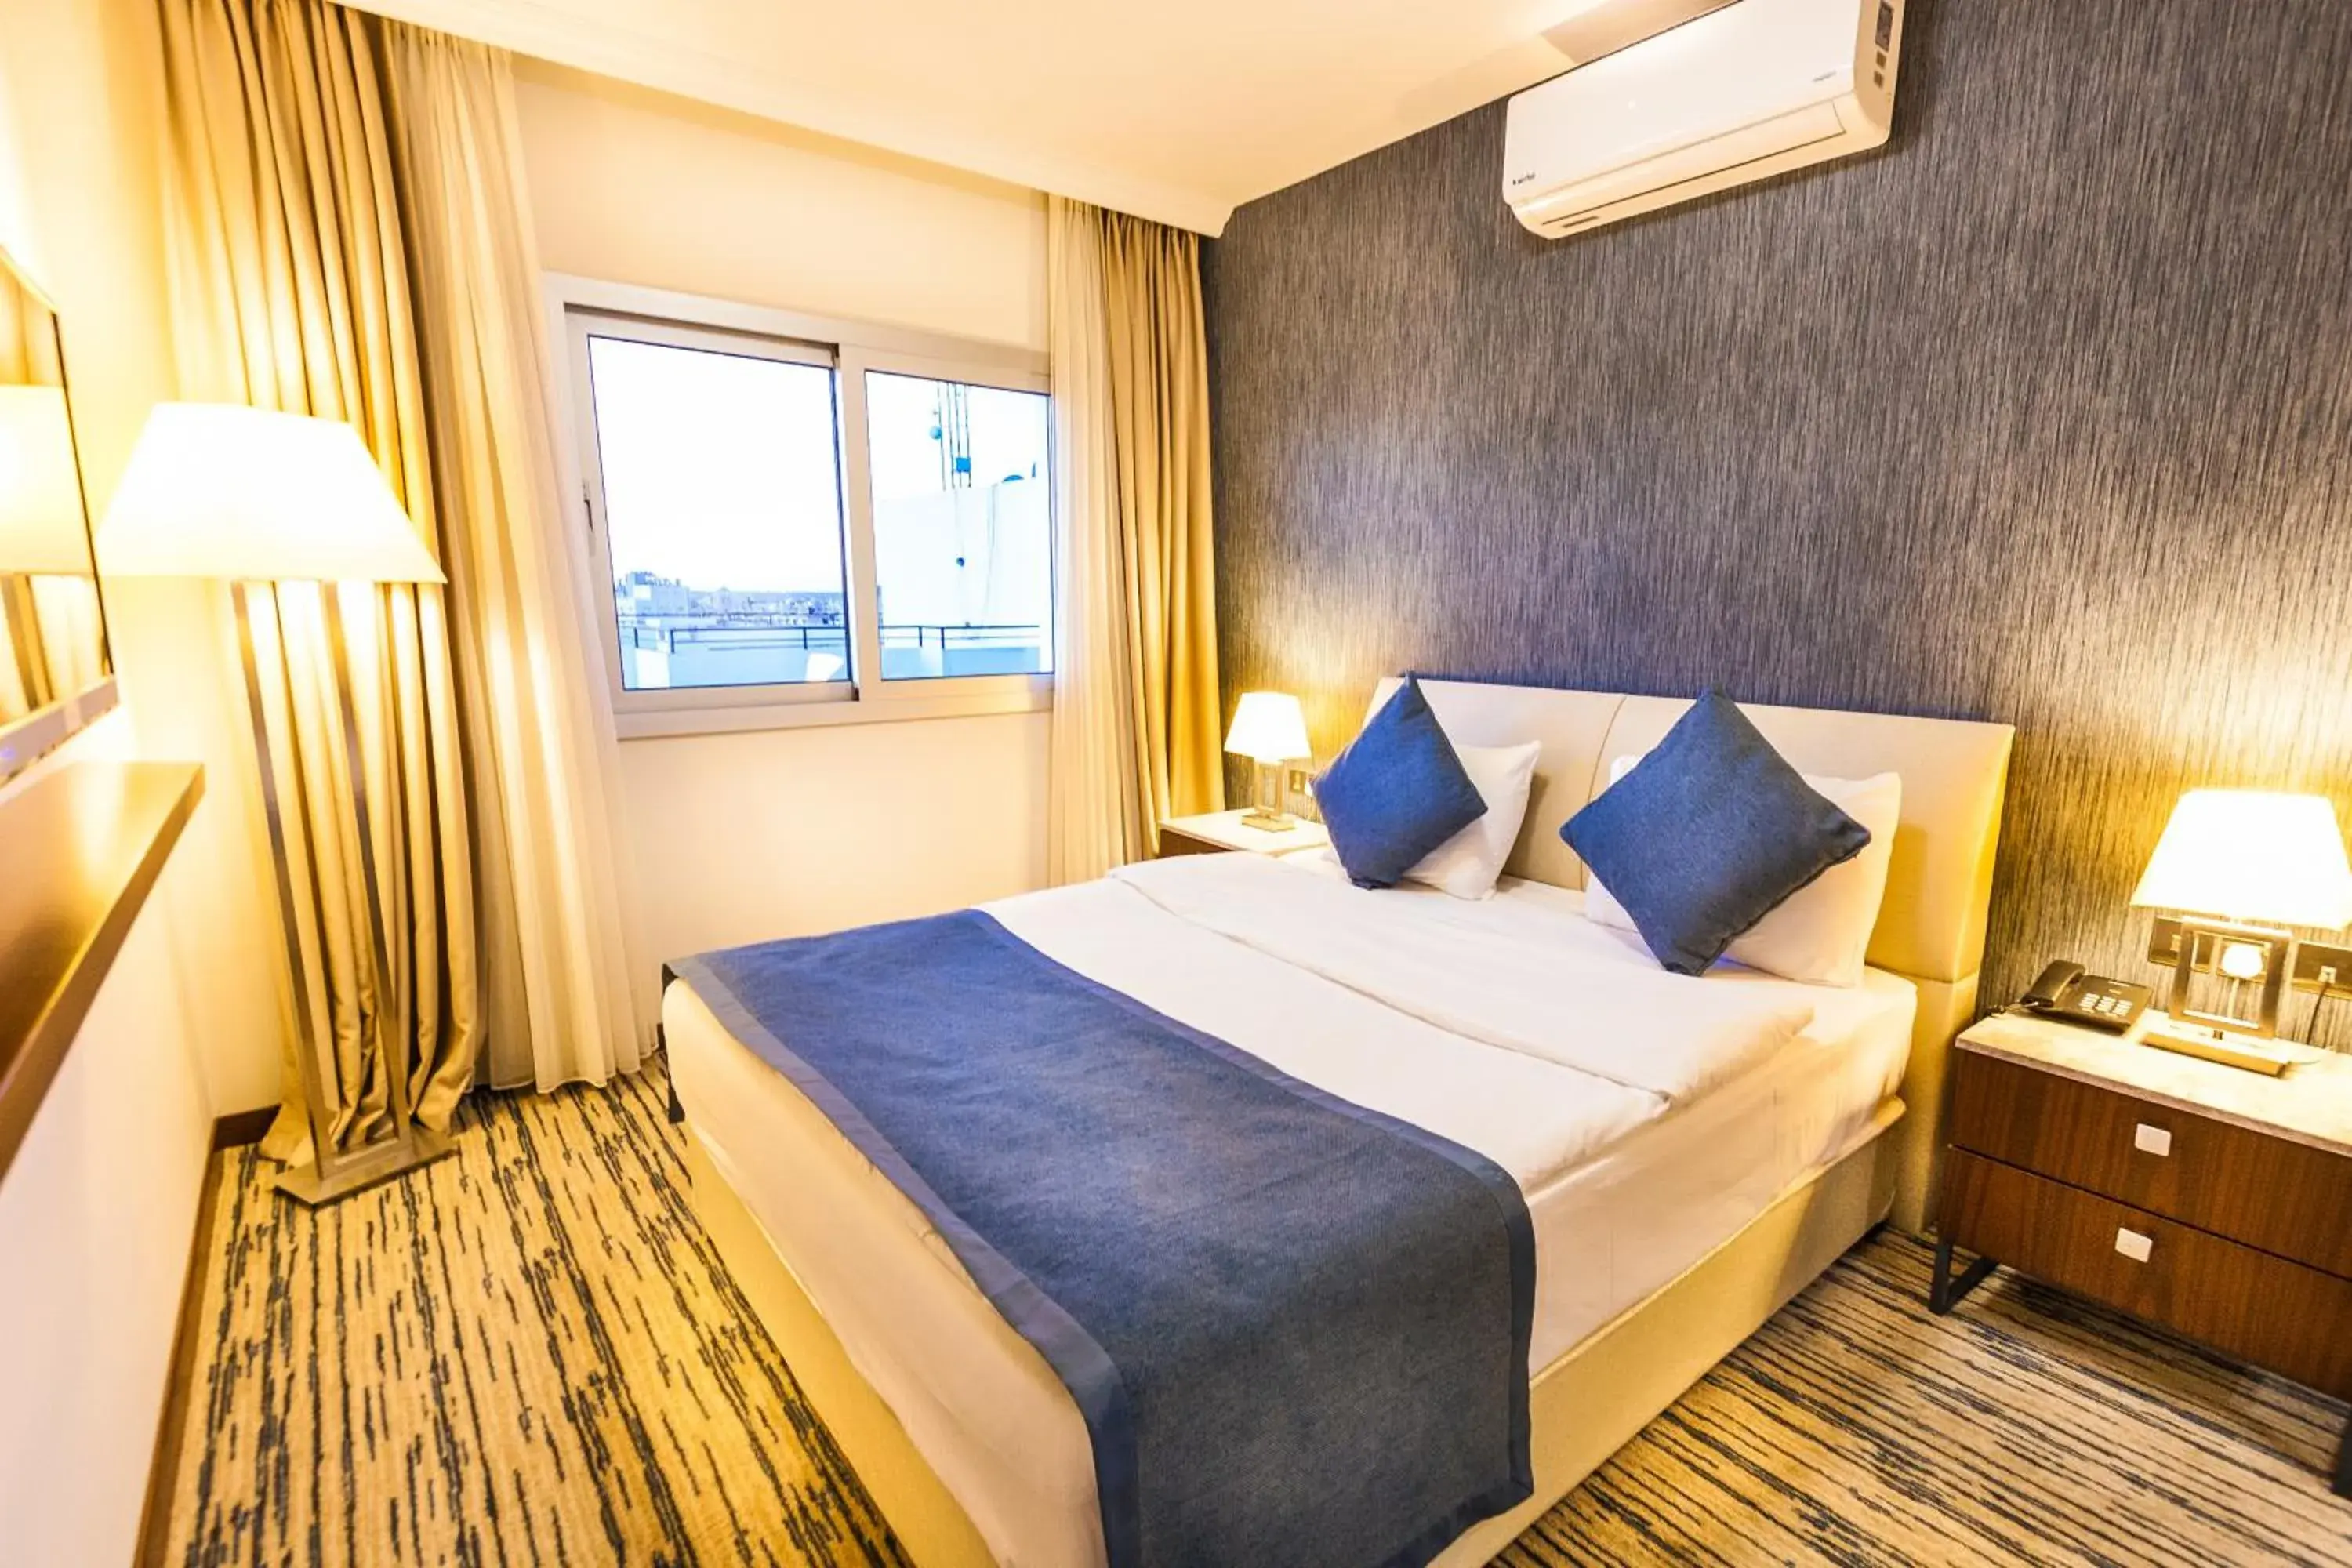 Bedroom, Bed in Port View Hotel